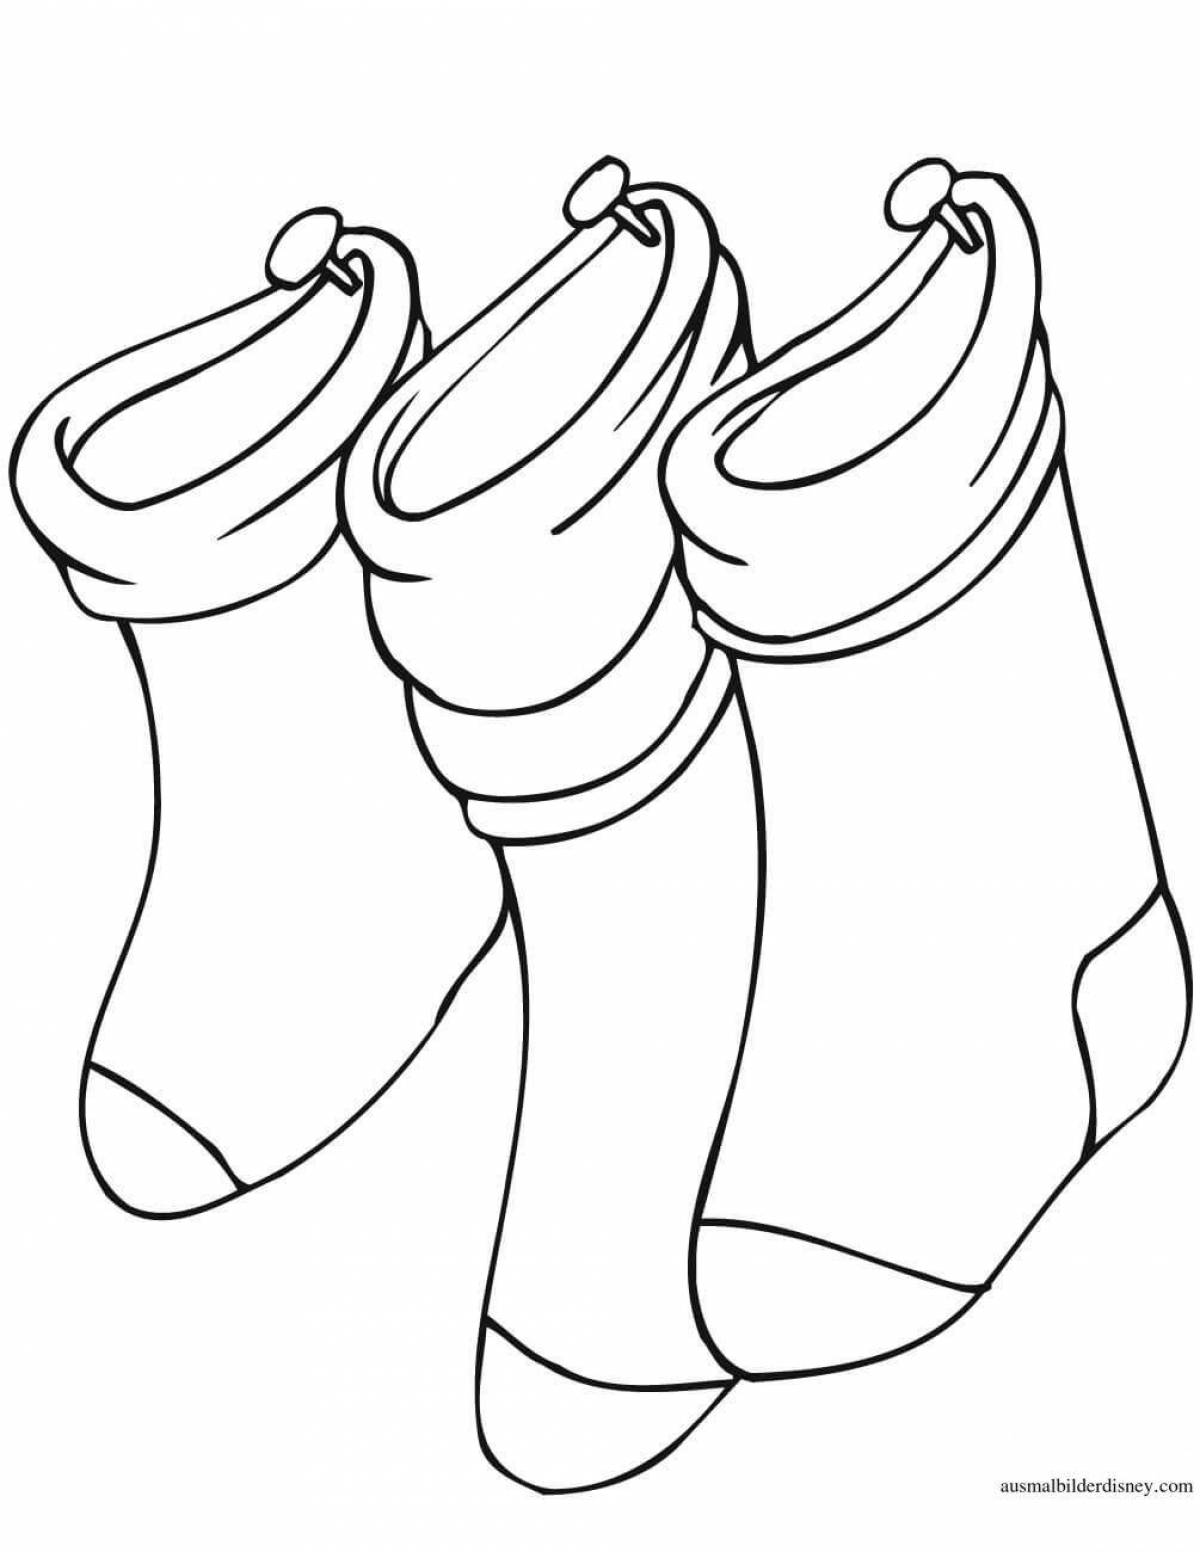 Контур носки для раскрашивания